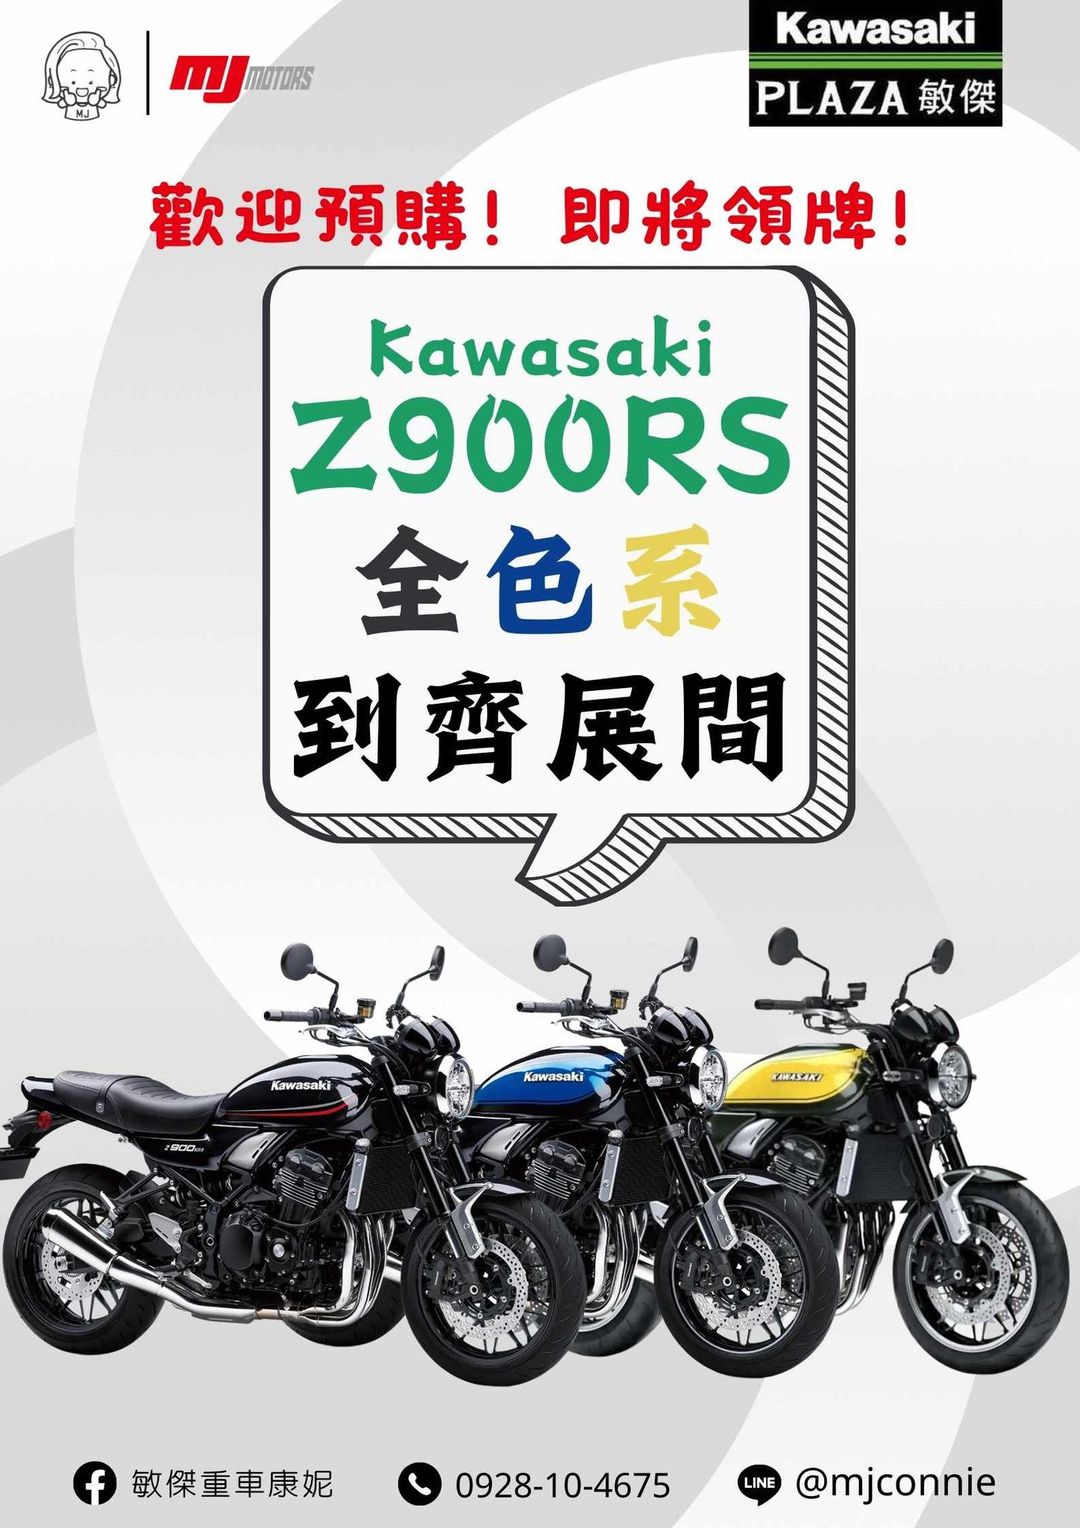 KAWASAKI Z900RS新車出售中 『敏傑康妮』Kawasaki Z900RS 2024式樣 新配色 好亮眼!!! 售62.8萬元 請洽敏傑重車康妮 | 敏傑車業資深銷售專員 康妮 Connie